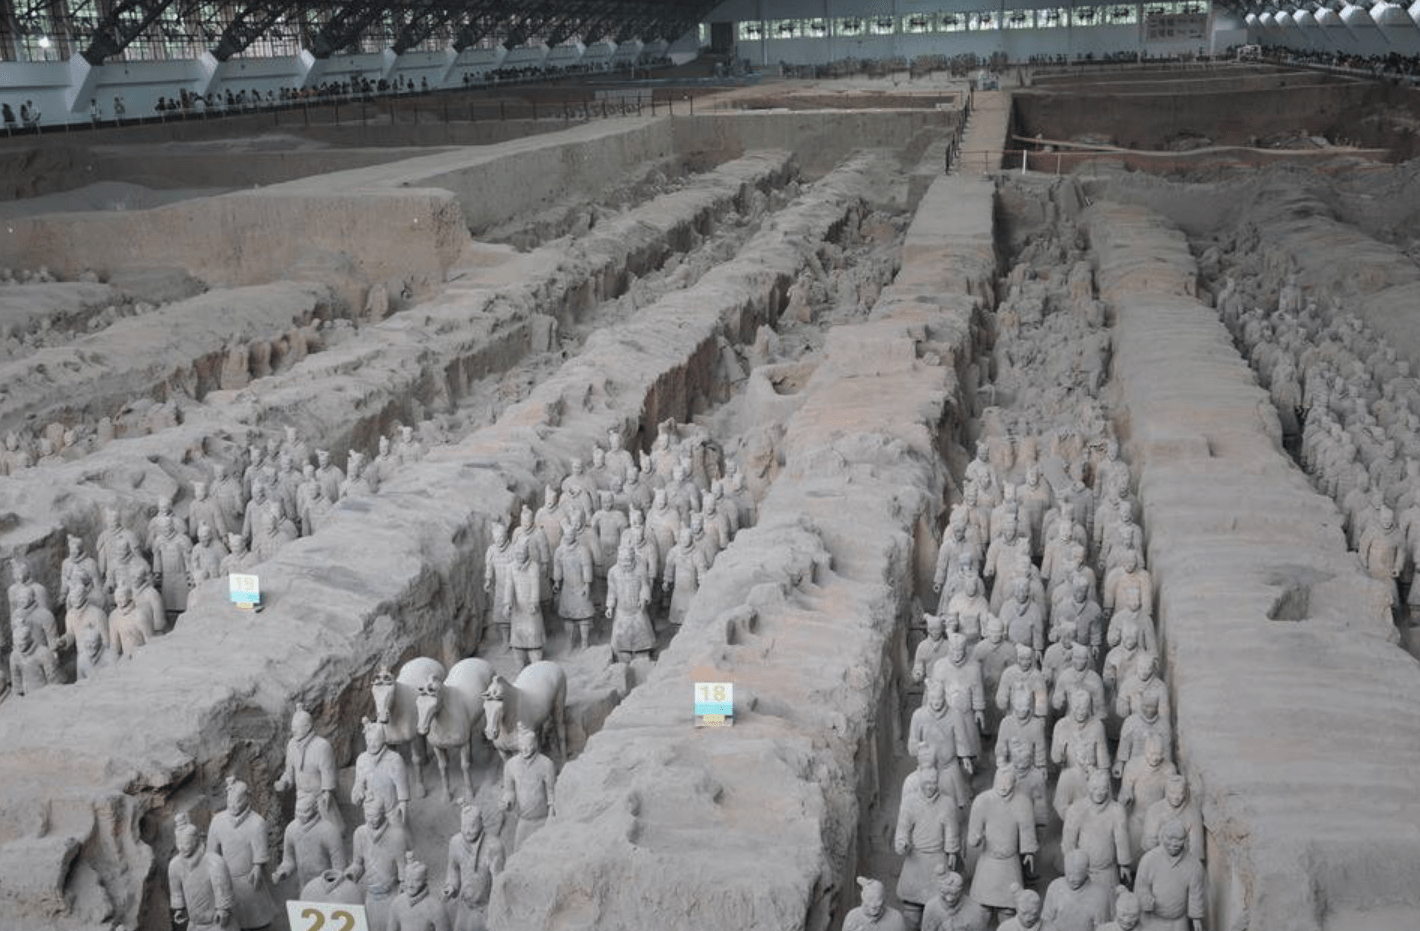 原创
            保存千年的秦始皇陵，近代竟差一点被偷盗，20米盗洞直通主墓室
                
                 